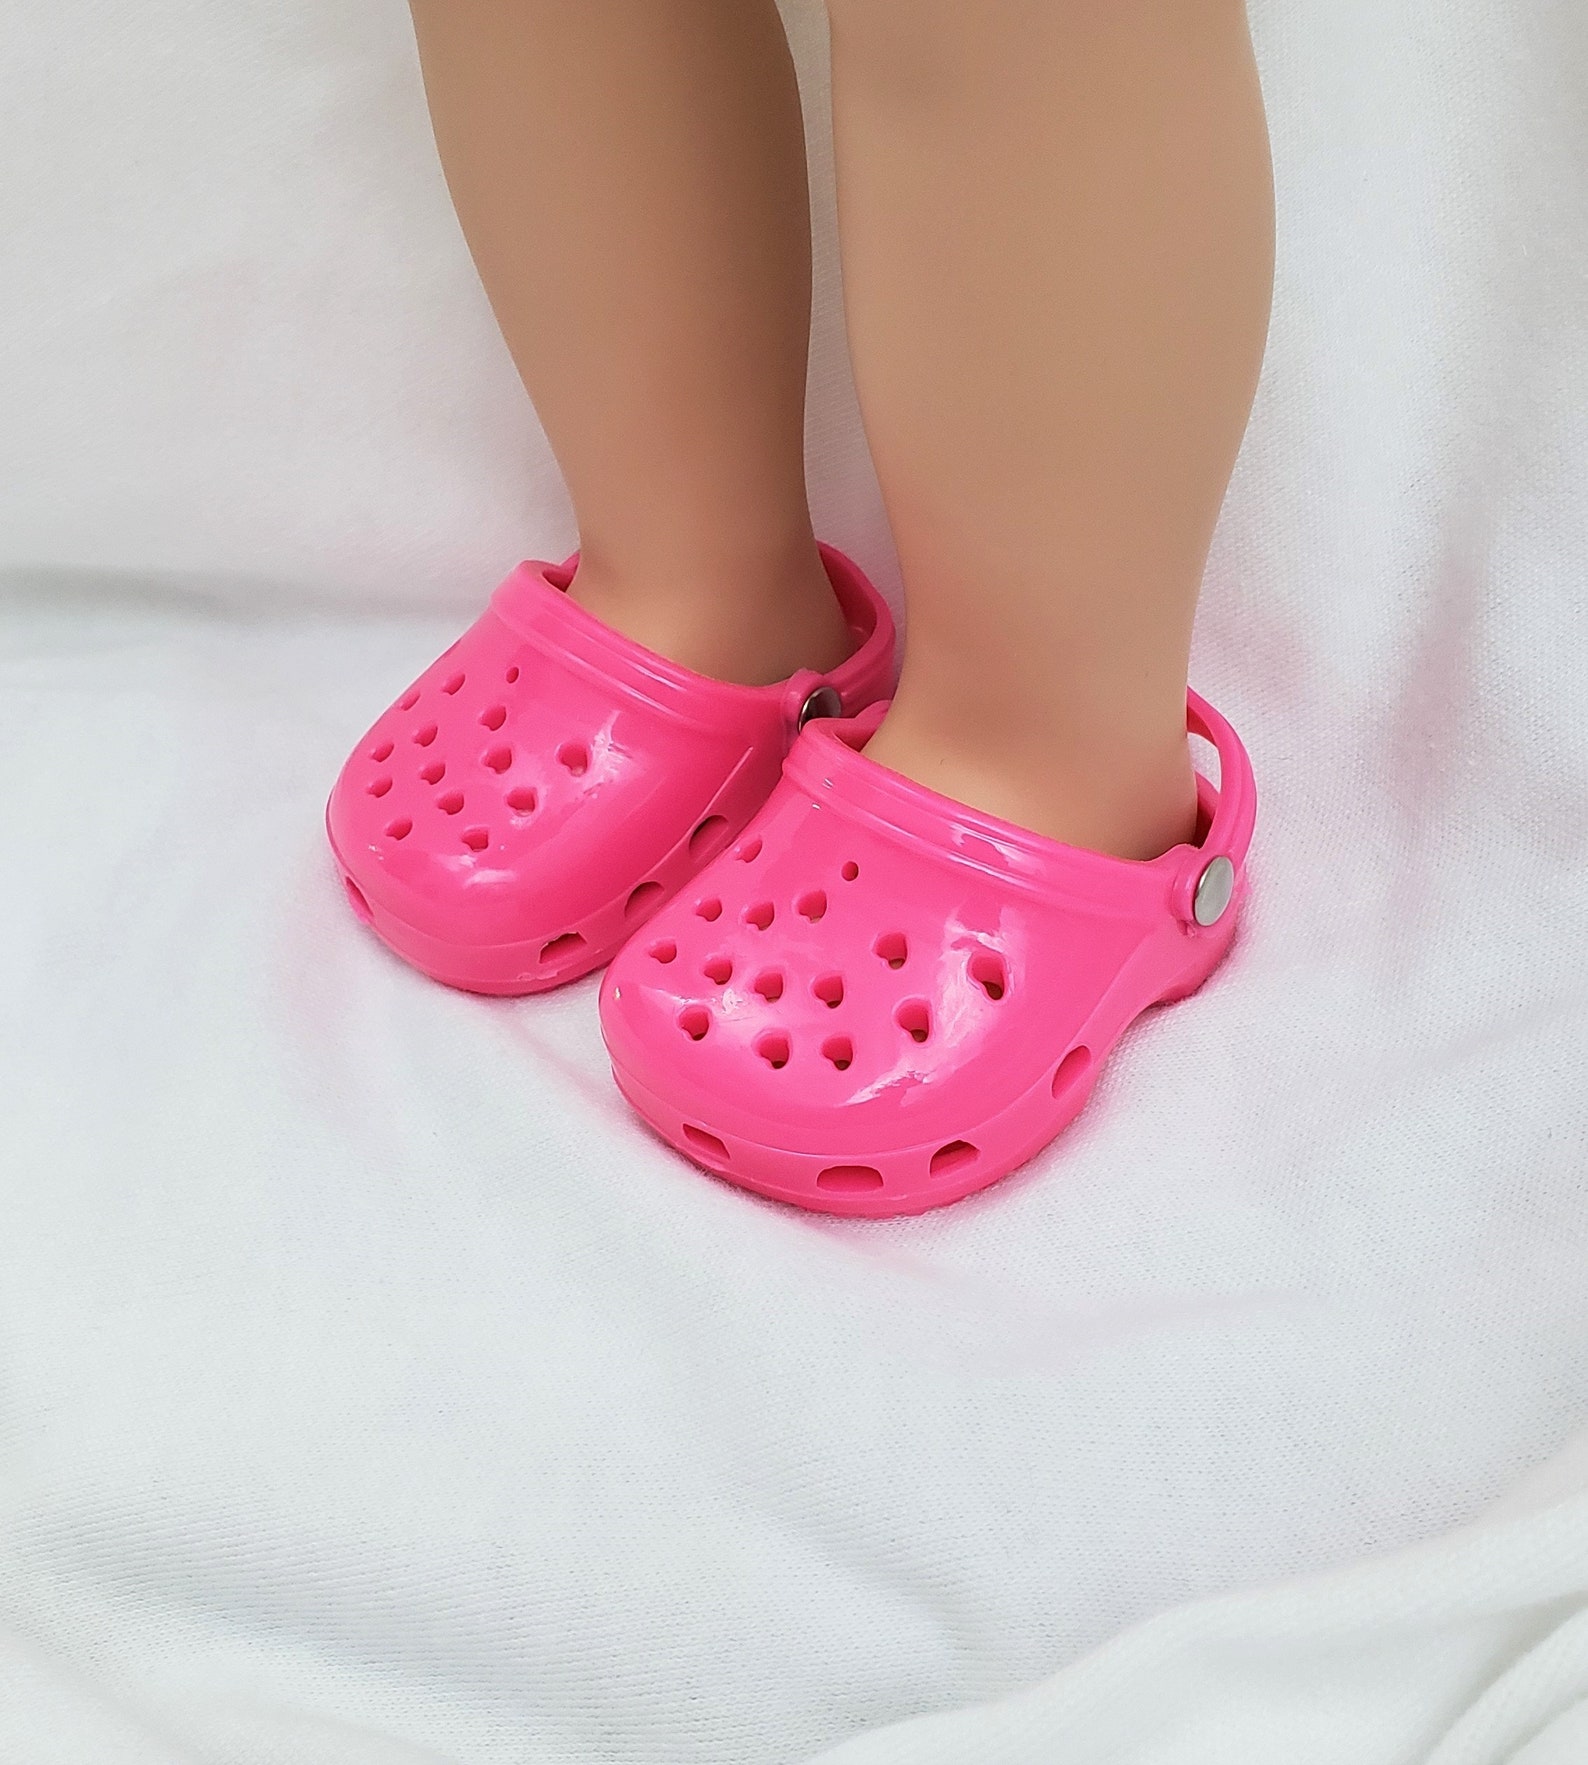 Hot Pink 18 en Doll Crocs Rubber Garden Clogs Summer Beach | Etsy